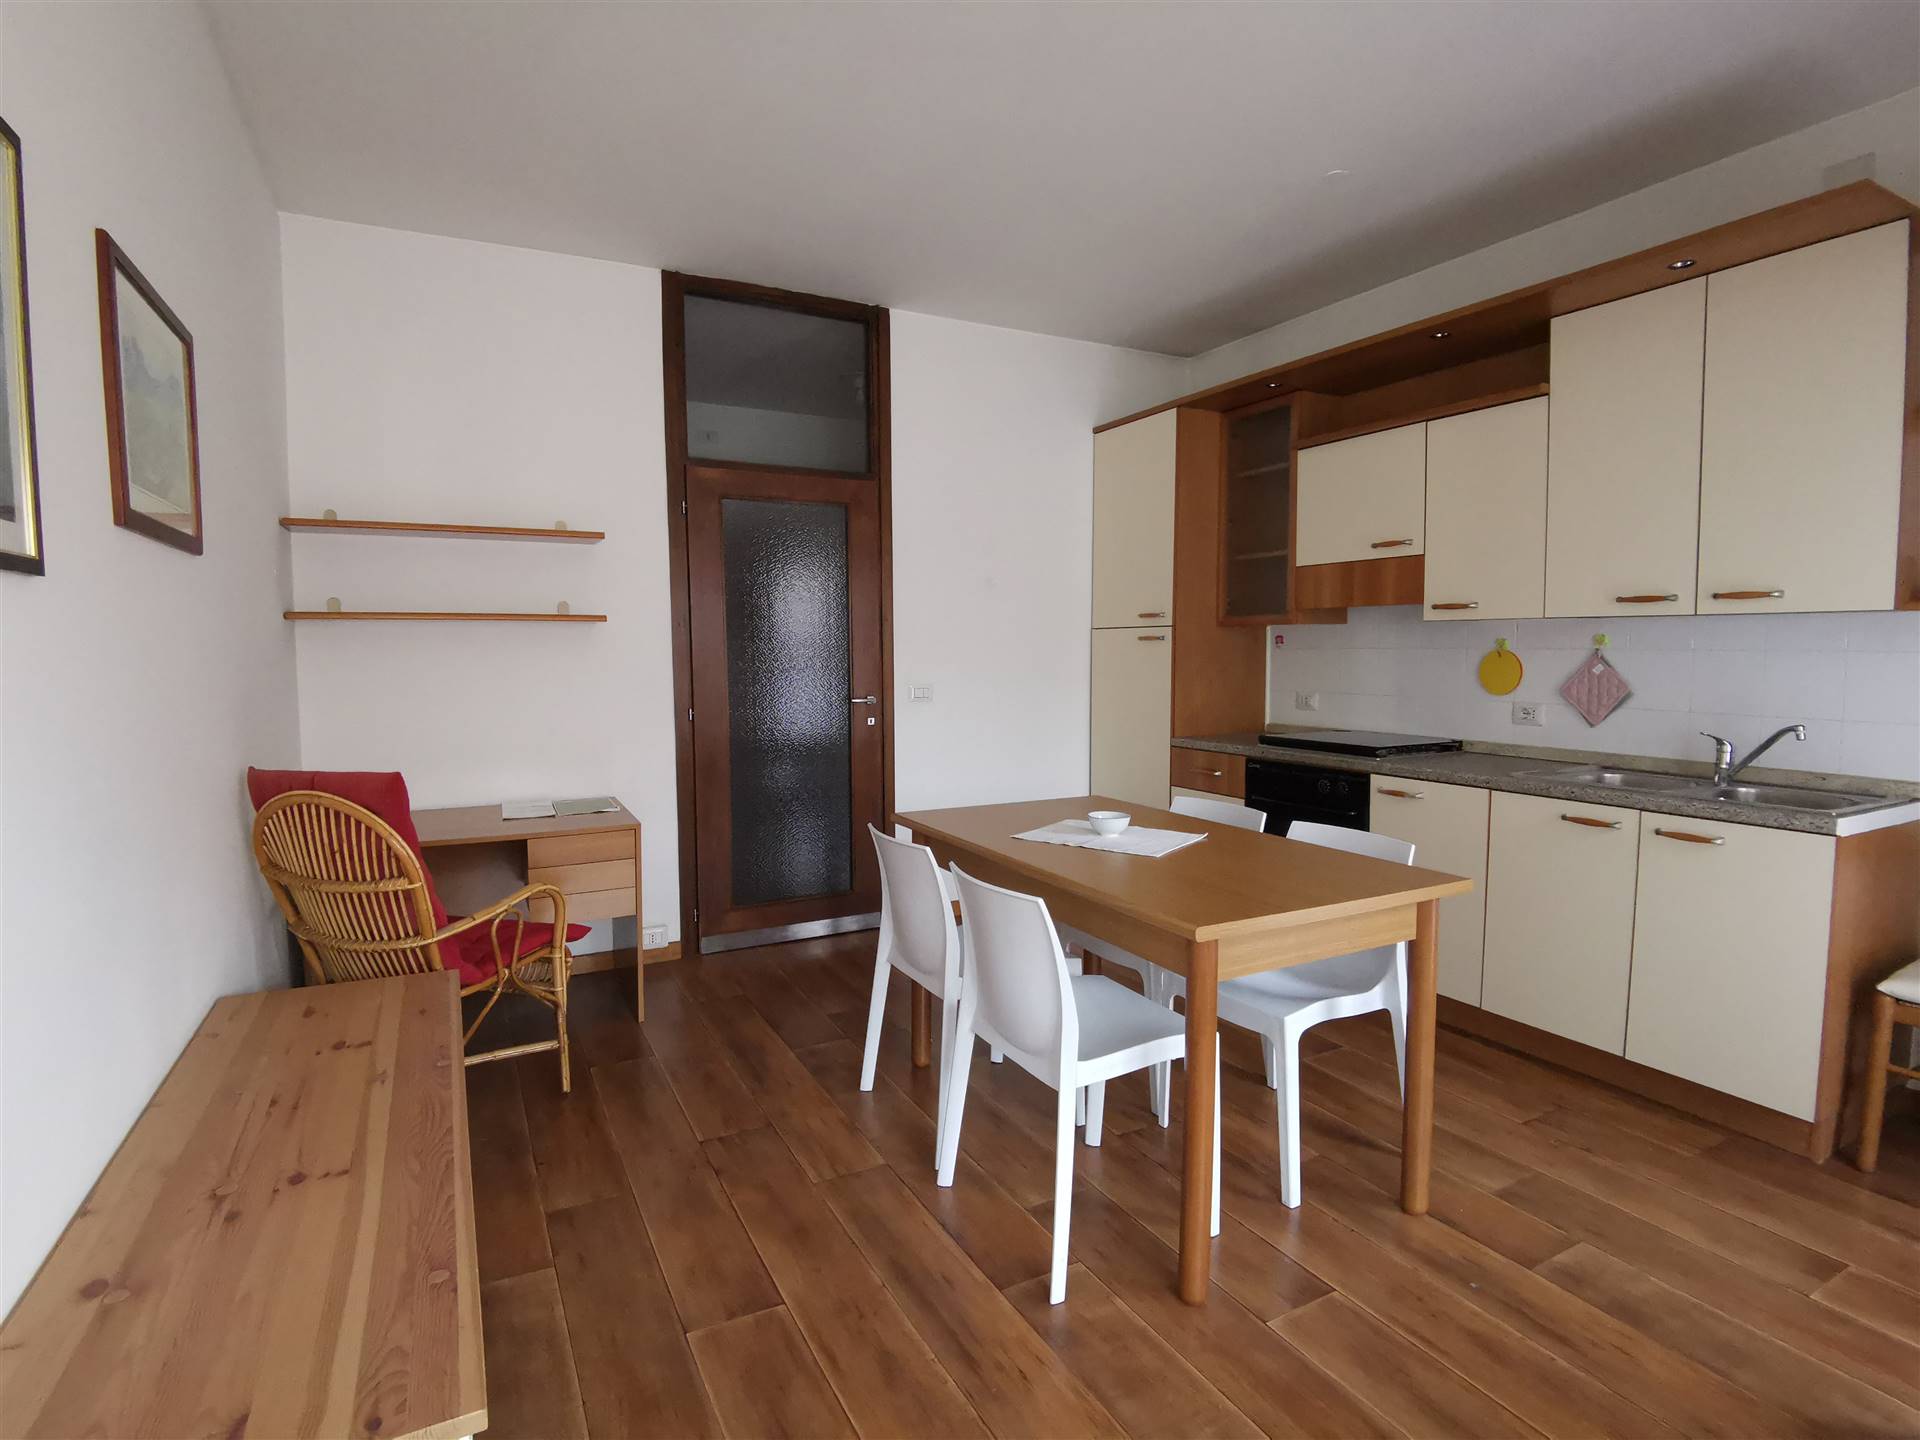 Appartamento in affitto a Sondrio, 2 locali, zona Zona: Centro zona Garibaldi, prezzo € 390 | CambioCasa.it